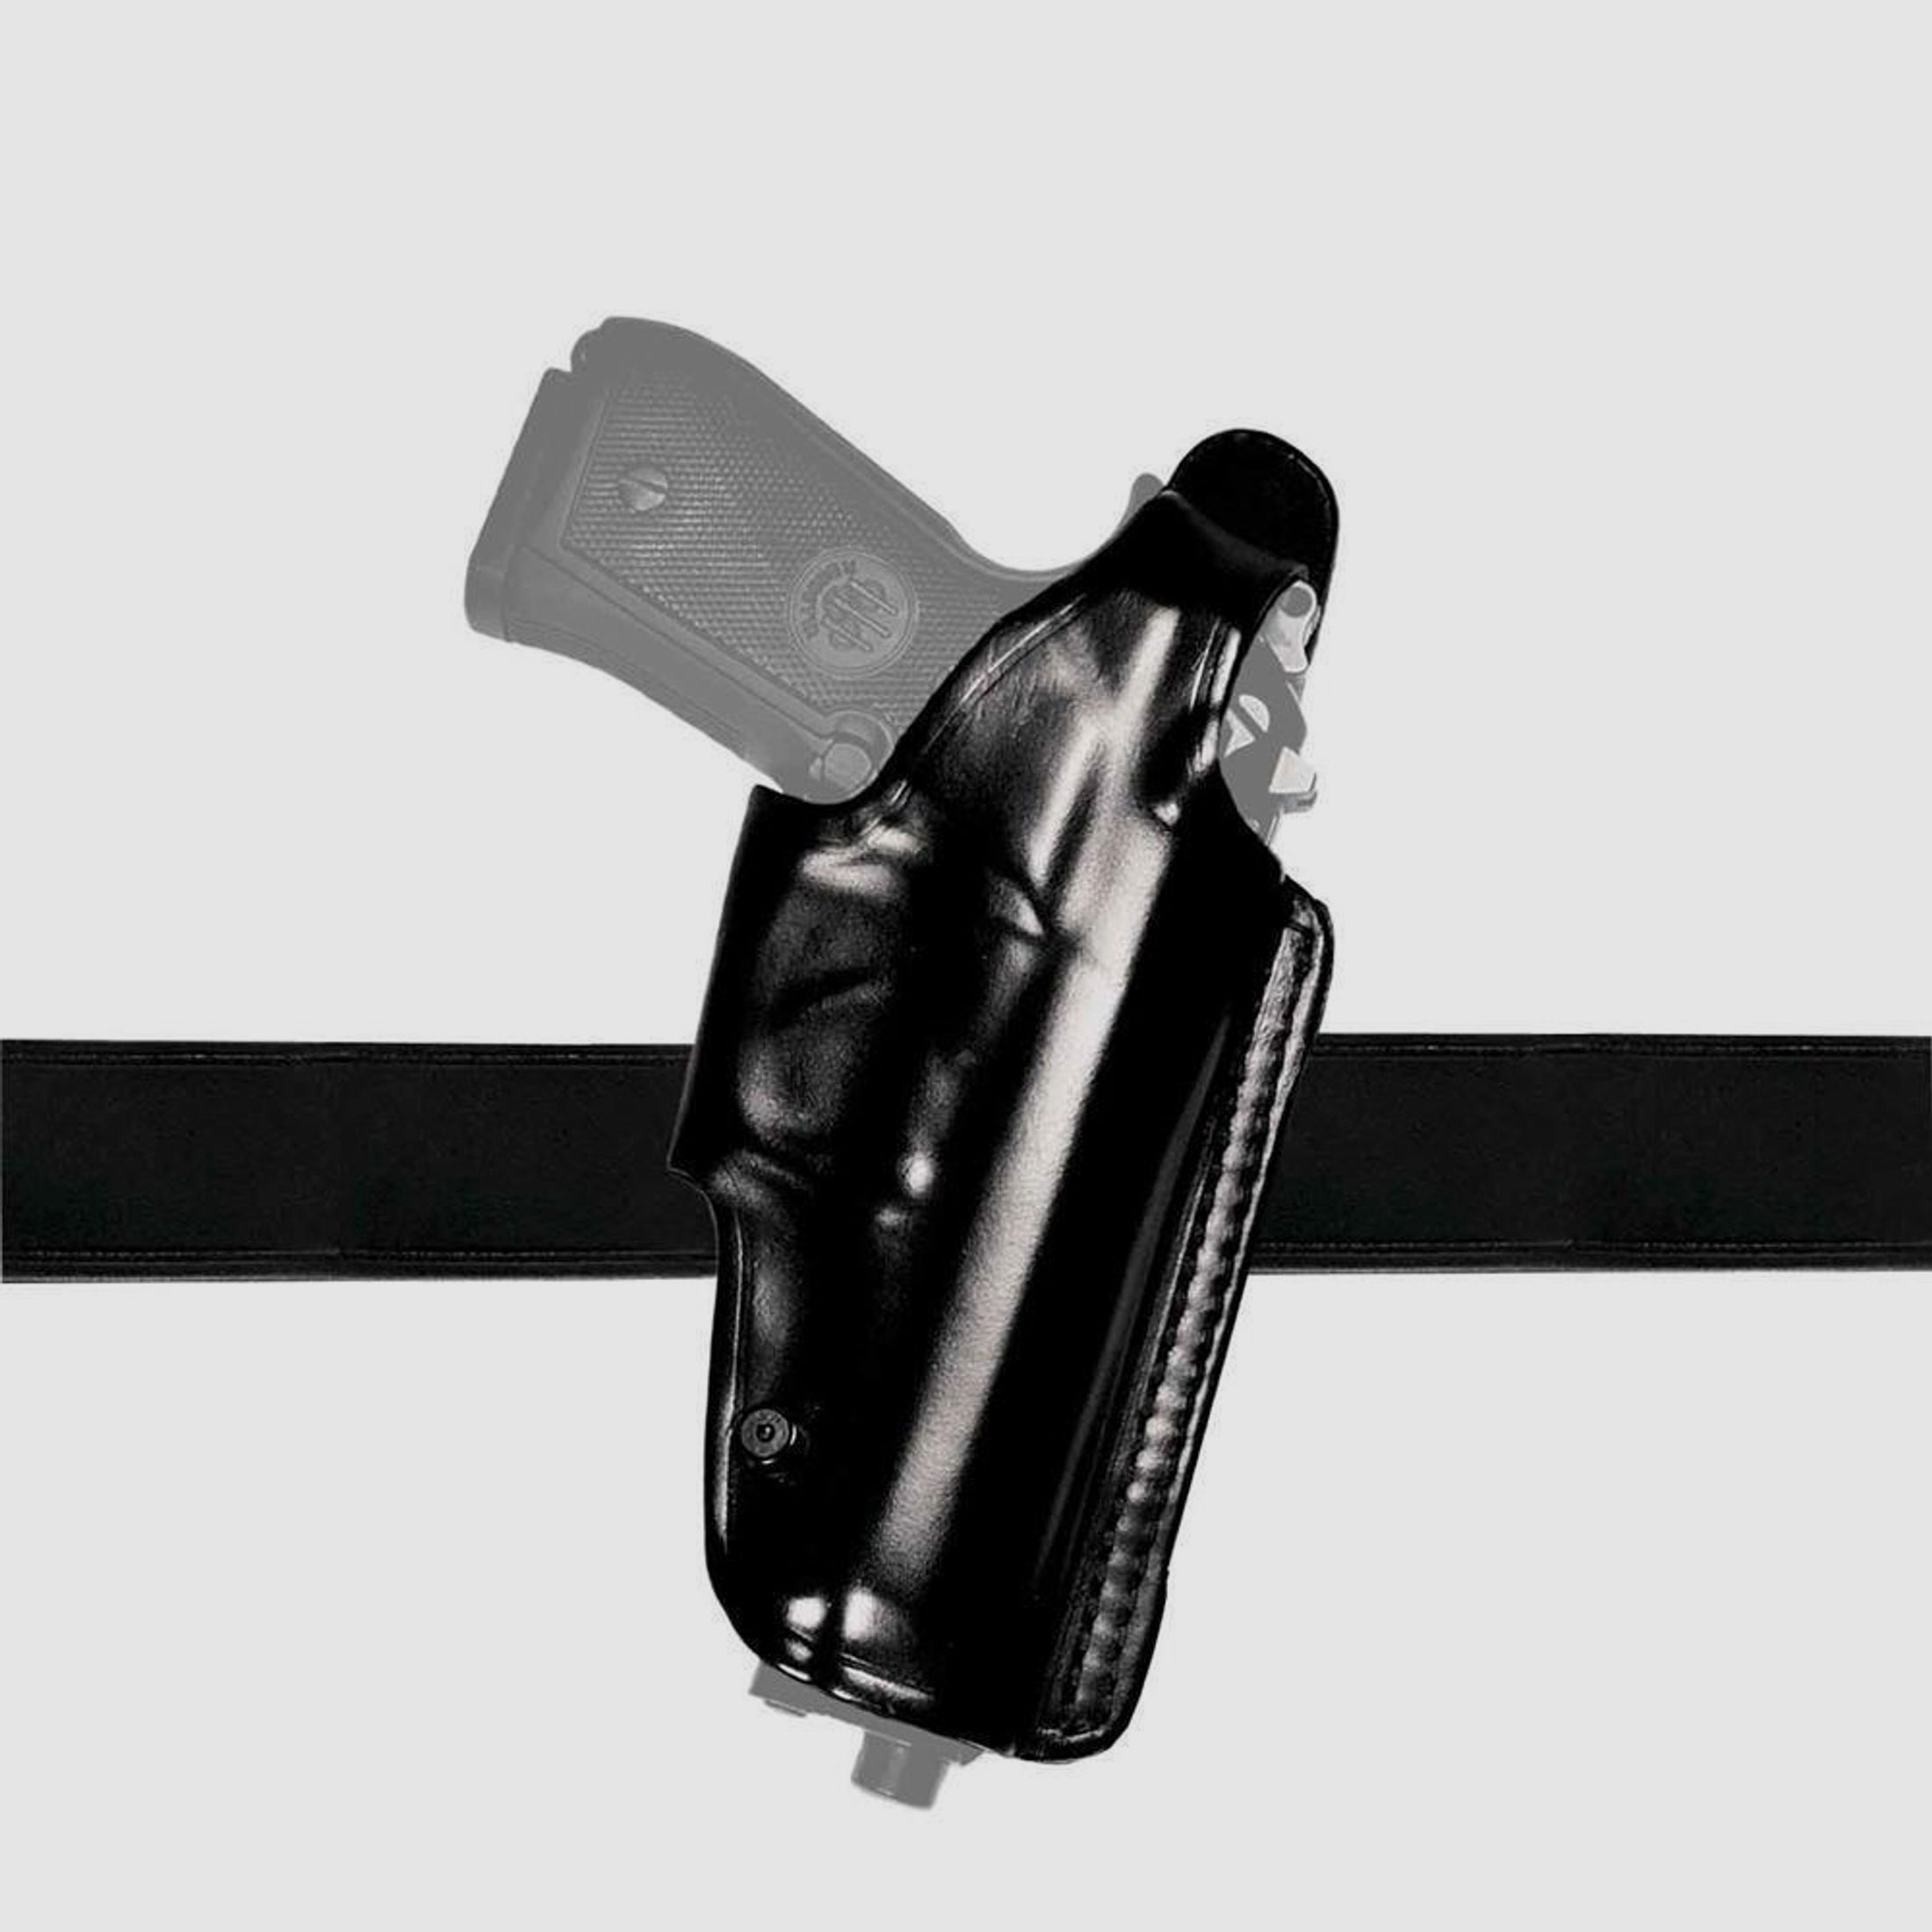 Mehrzweck-Schulterholster/Gürtelholster "Miami 2" Glock 43/43X Schwarz Linkshänder